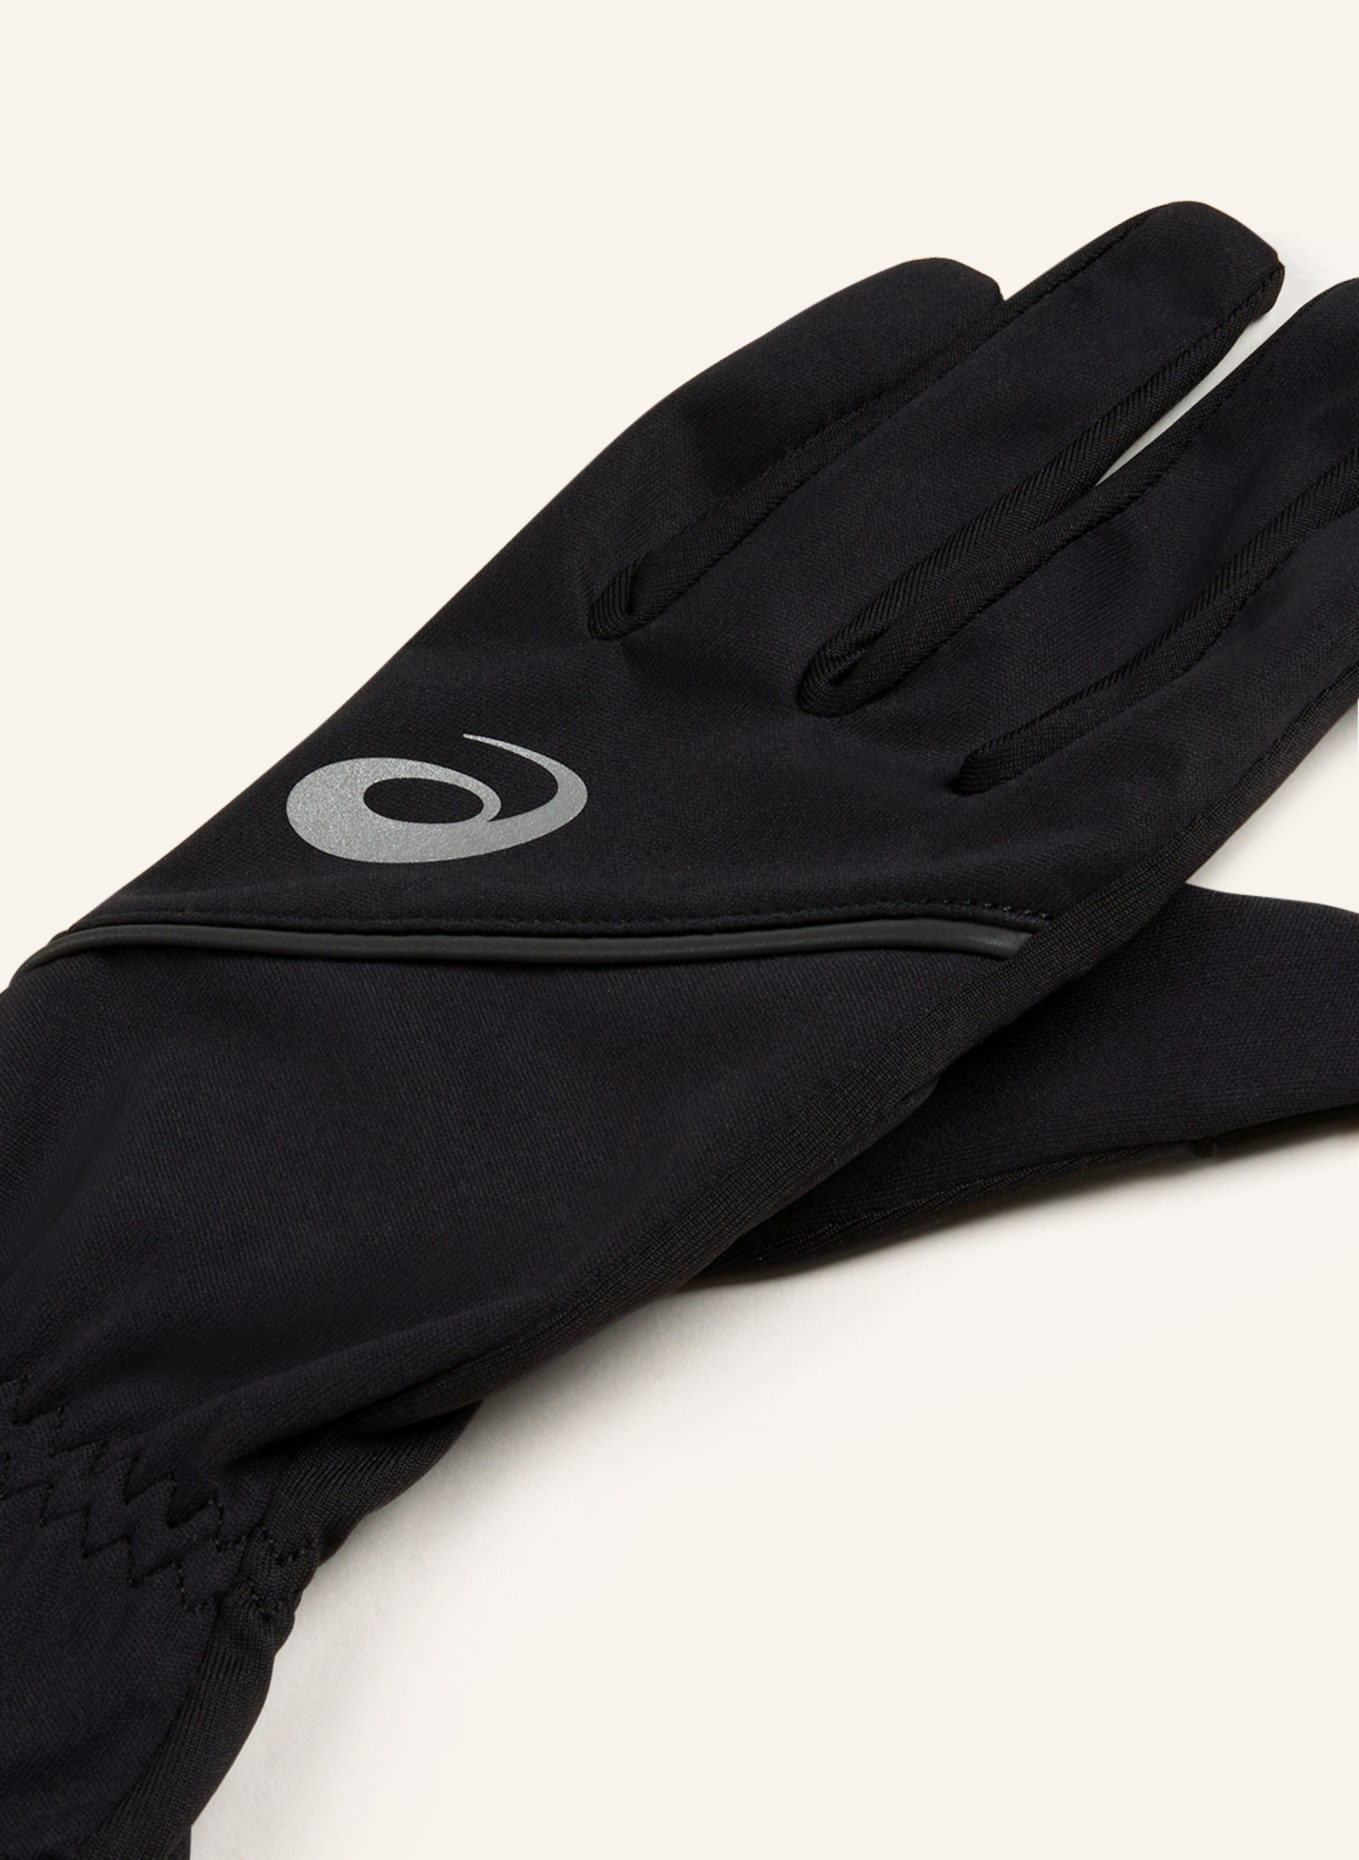 ASICS Multisport-Handschuhe THERMAL Touchscreen-Funktion GLOVES in schwarz mit